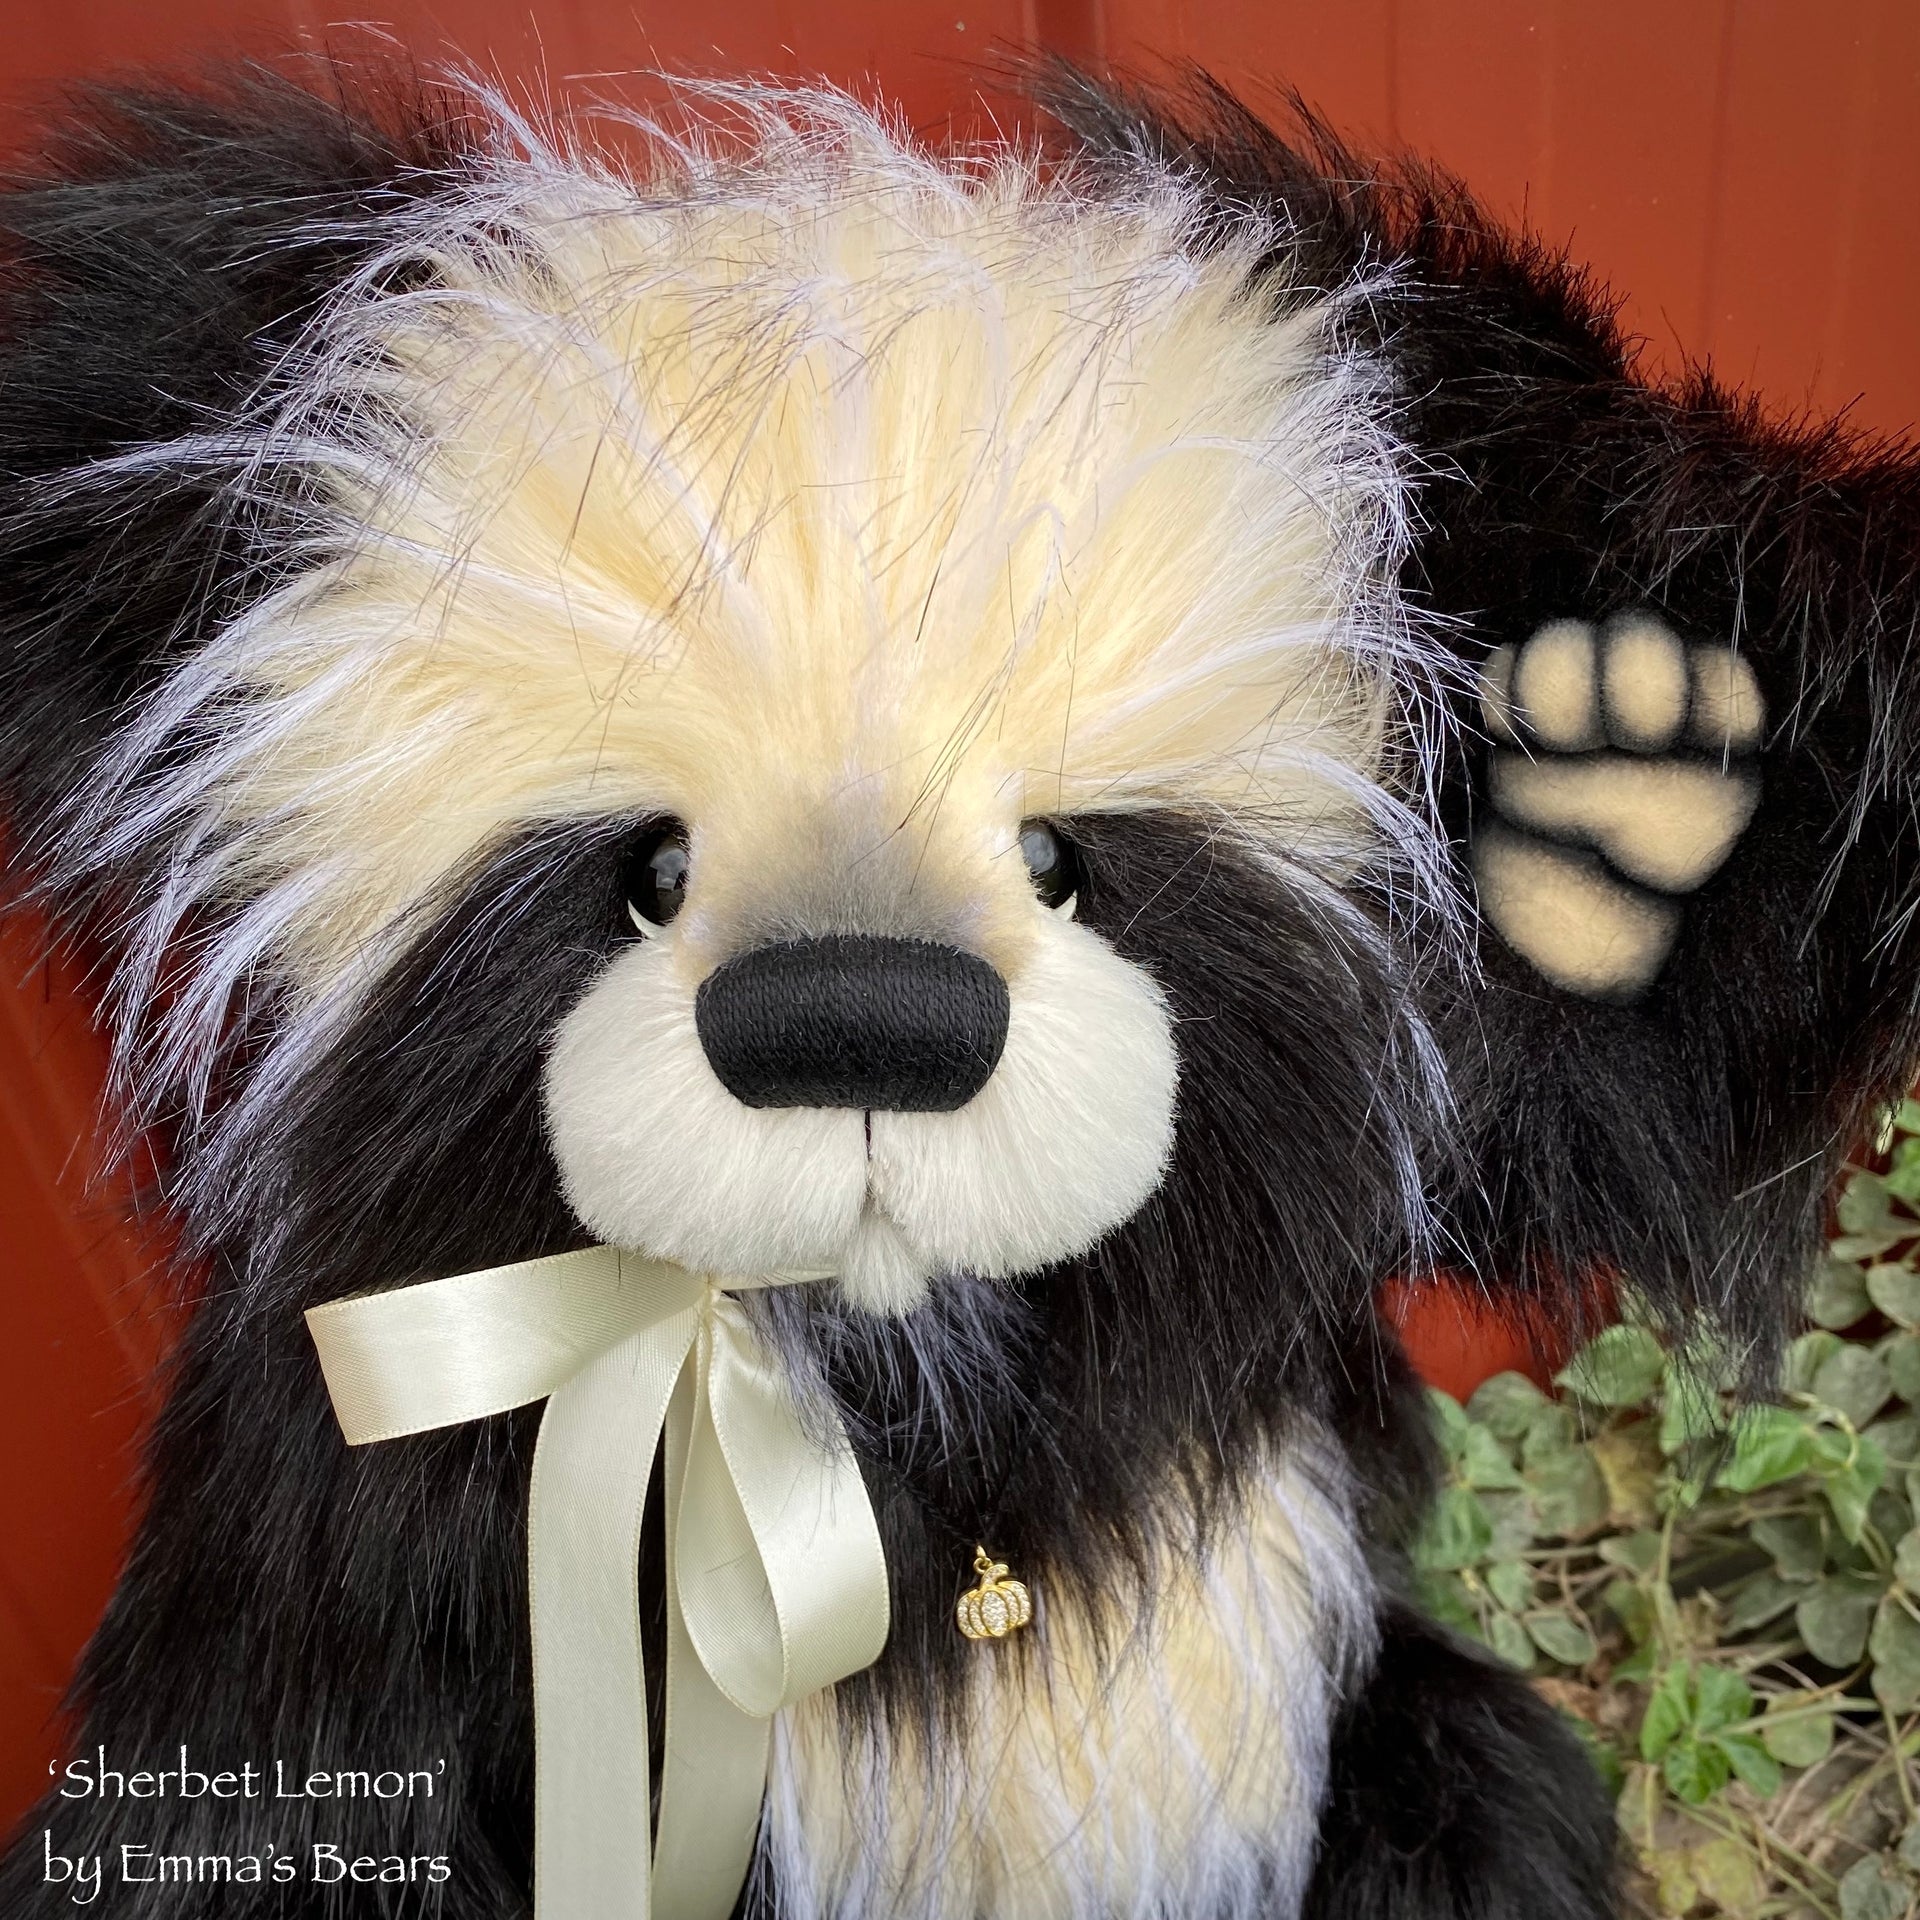 Sherbet lemon - 16" faux fur and alpaca Artist Bear by Emma's Bears - OOAK